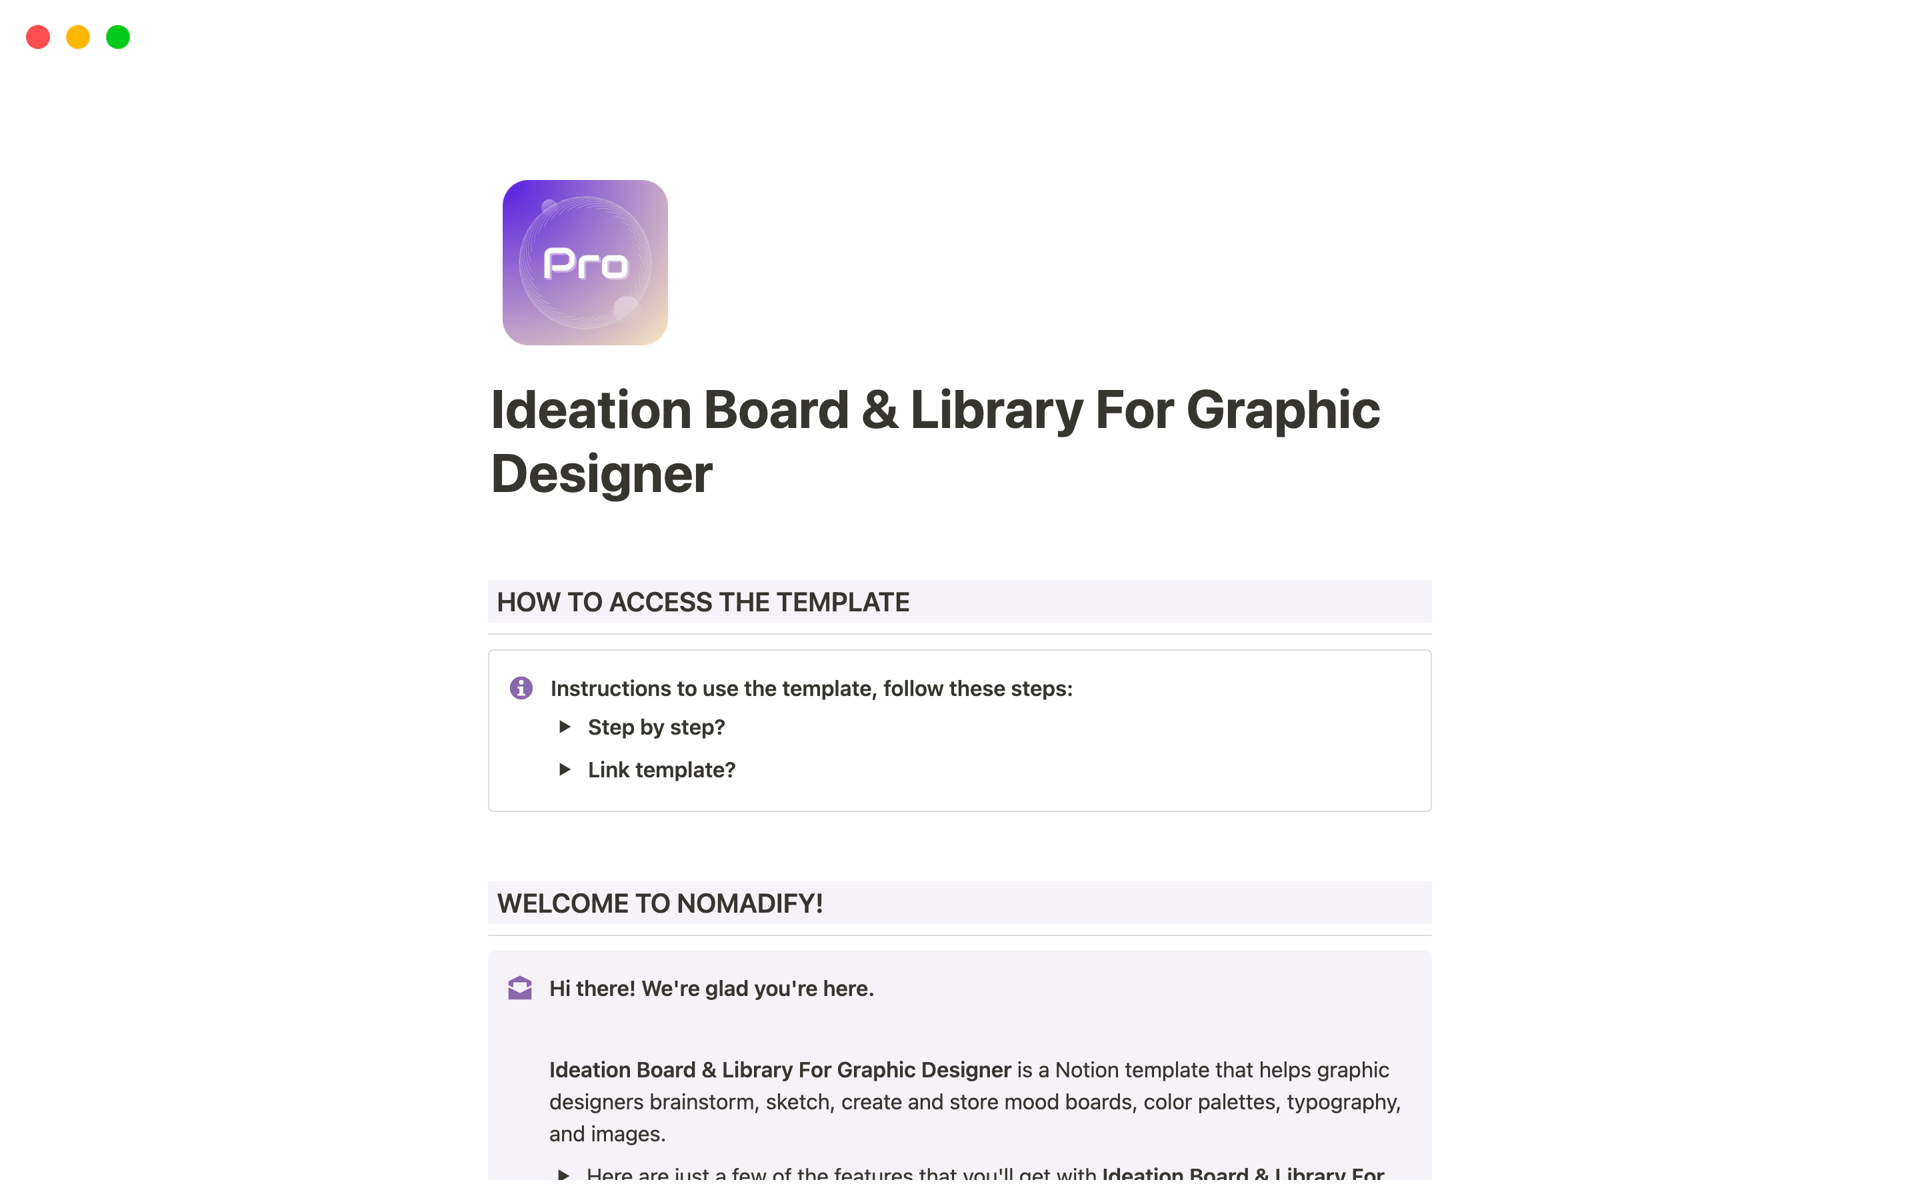 Vista previa de una plantilla para Ideation Board & Library For Graphic Designer